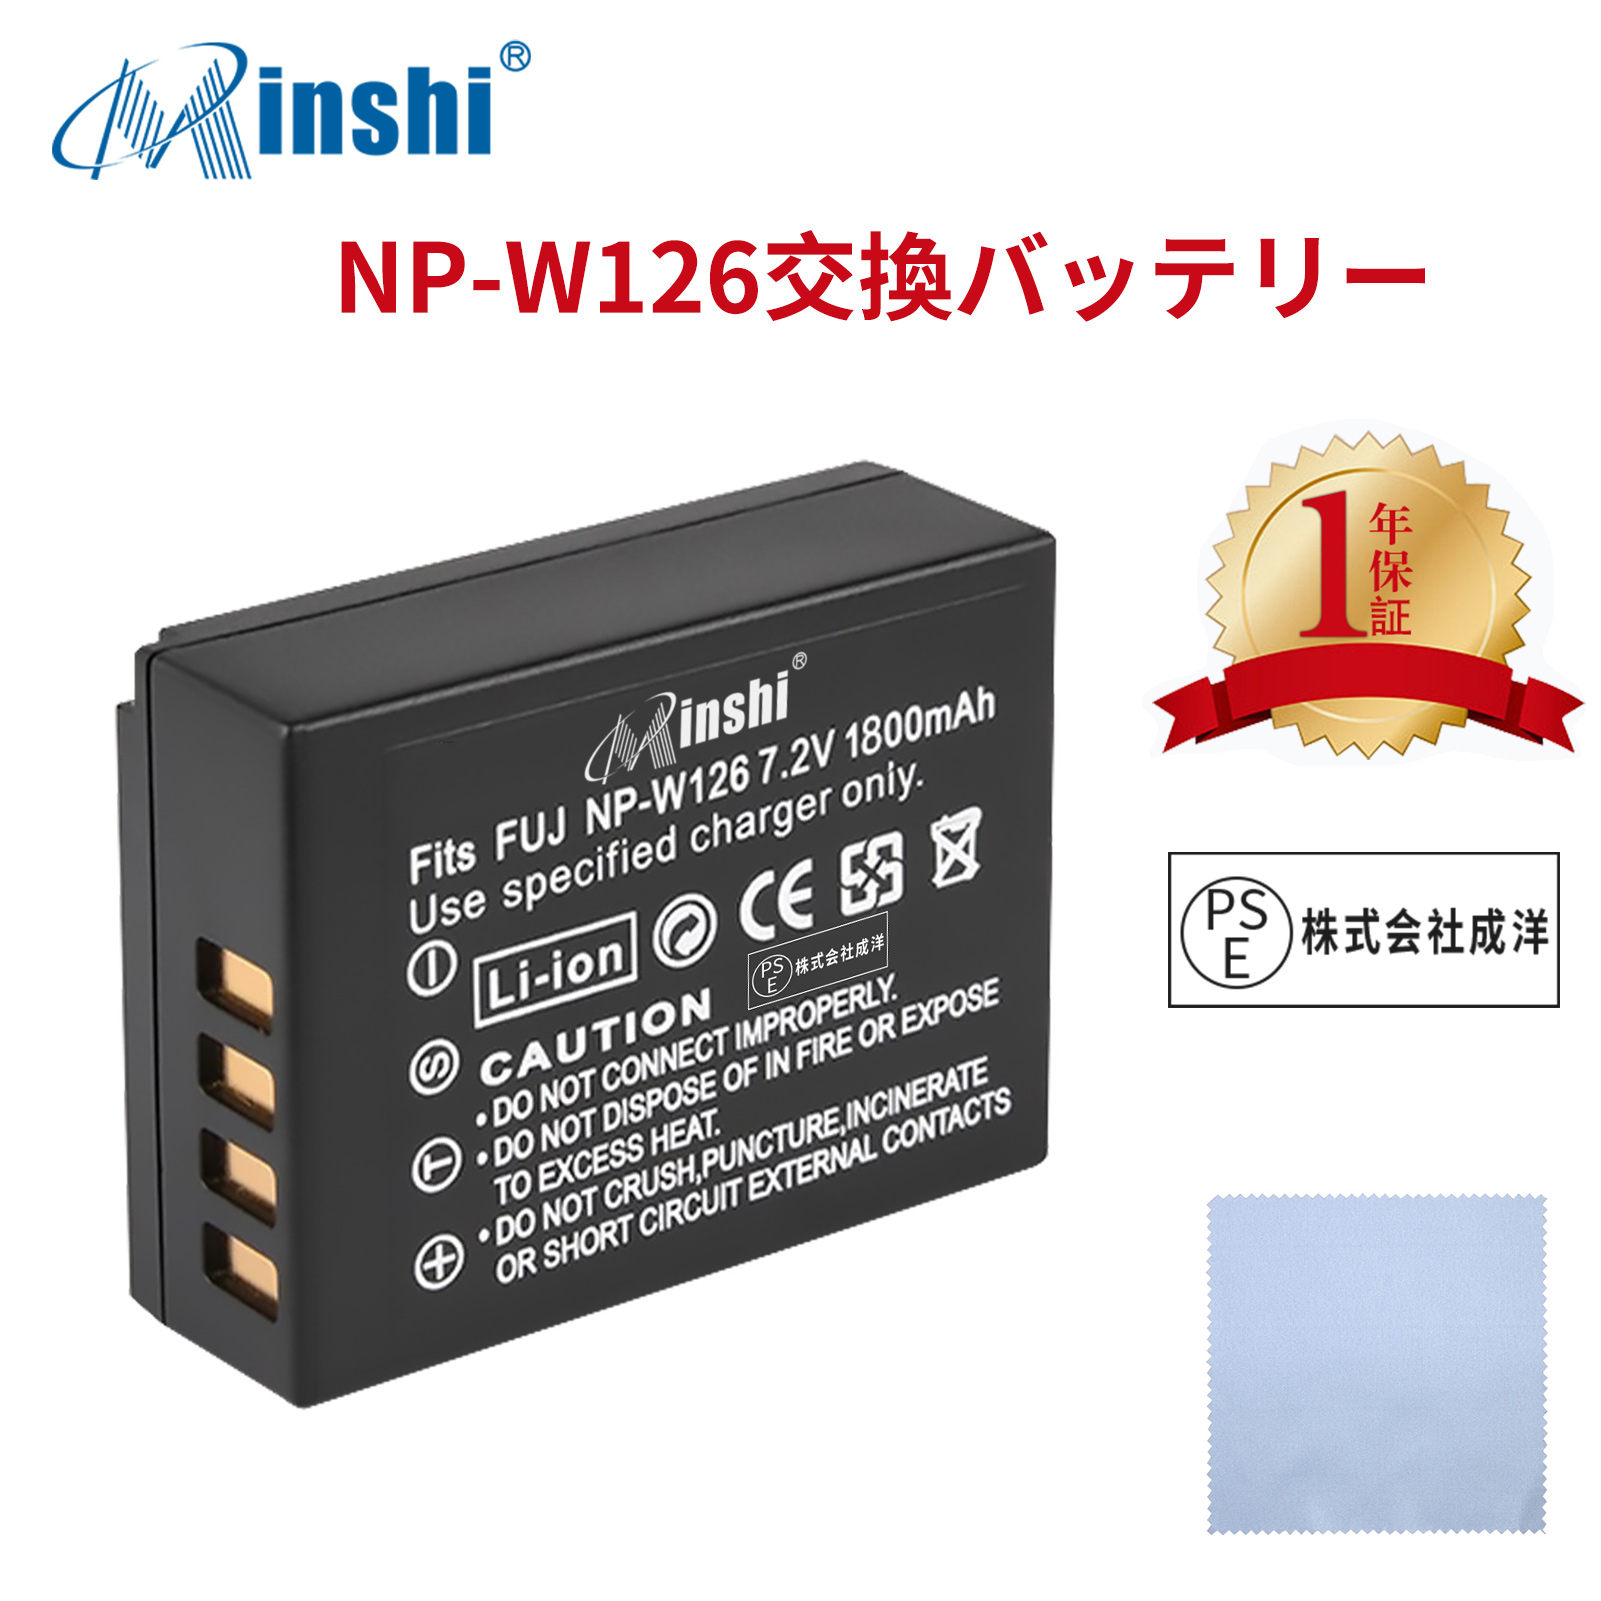 【クロス付き】minshi FUJIFILM X-M1 NP-W126S 【1800mAh 7.2V】 NP-W126 NP-W126S高品質 NP-W126S NP-W126互換バッテリー